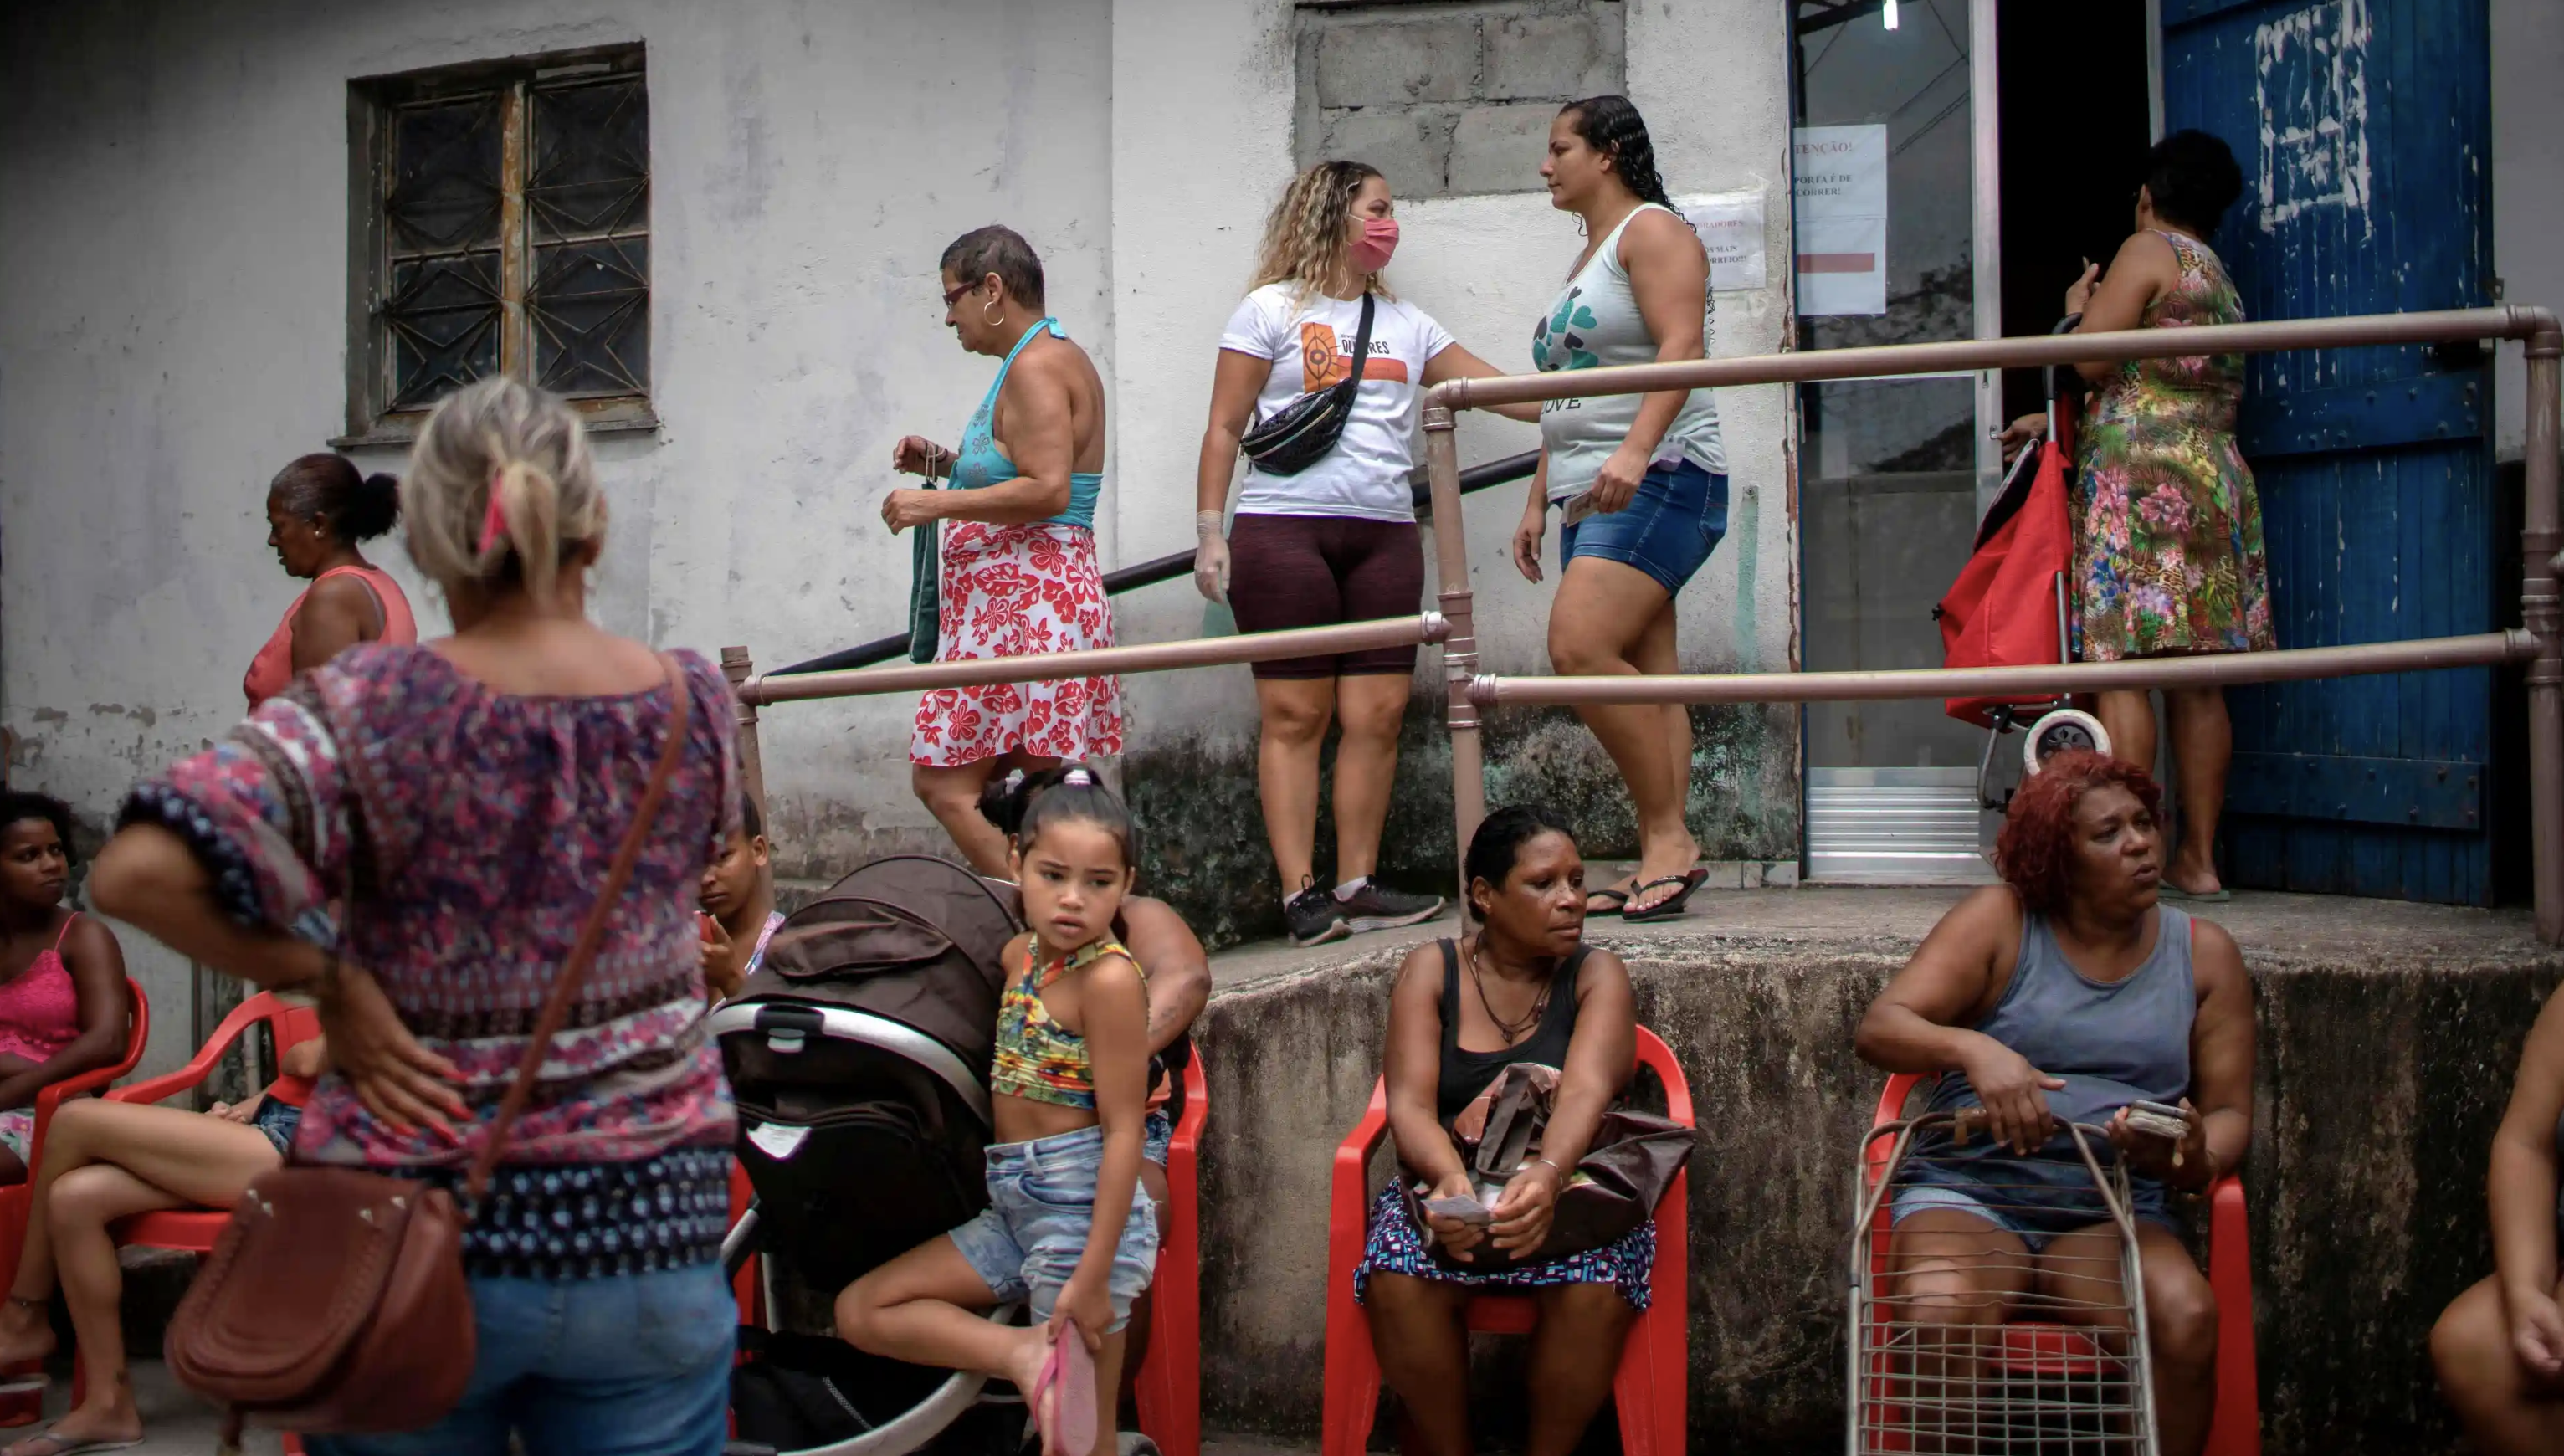 في طابور انتظاراً للحصول على المساعدات الغذائية في ريو دو جانيرو